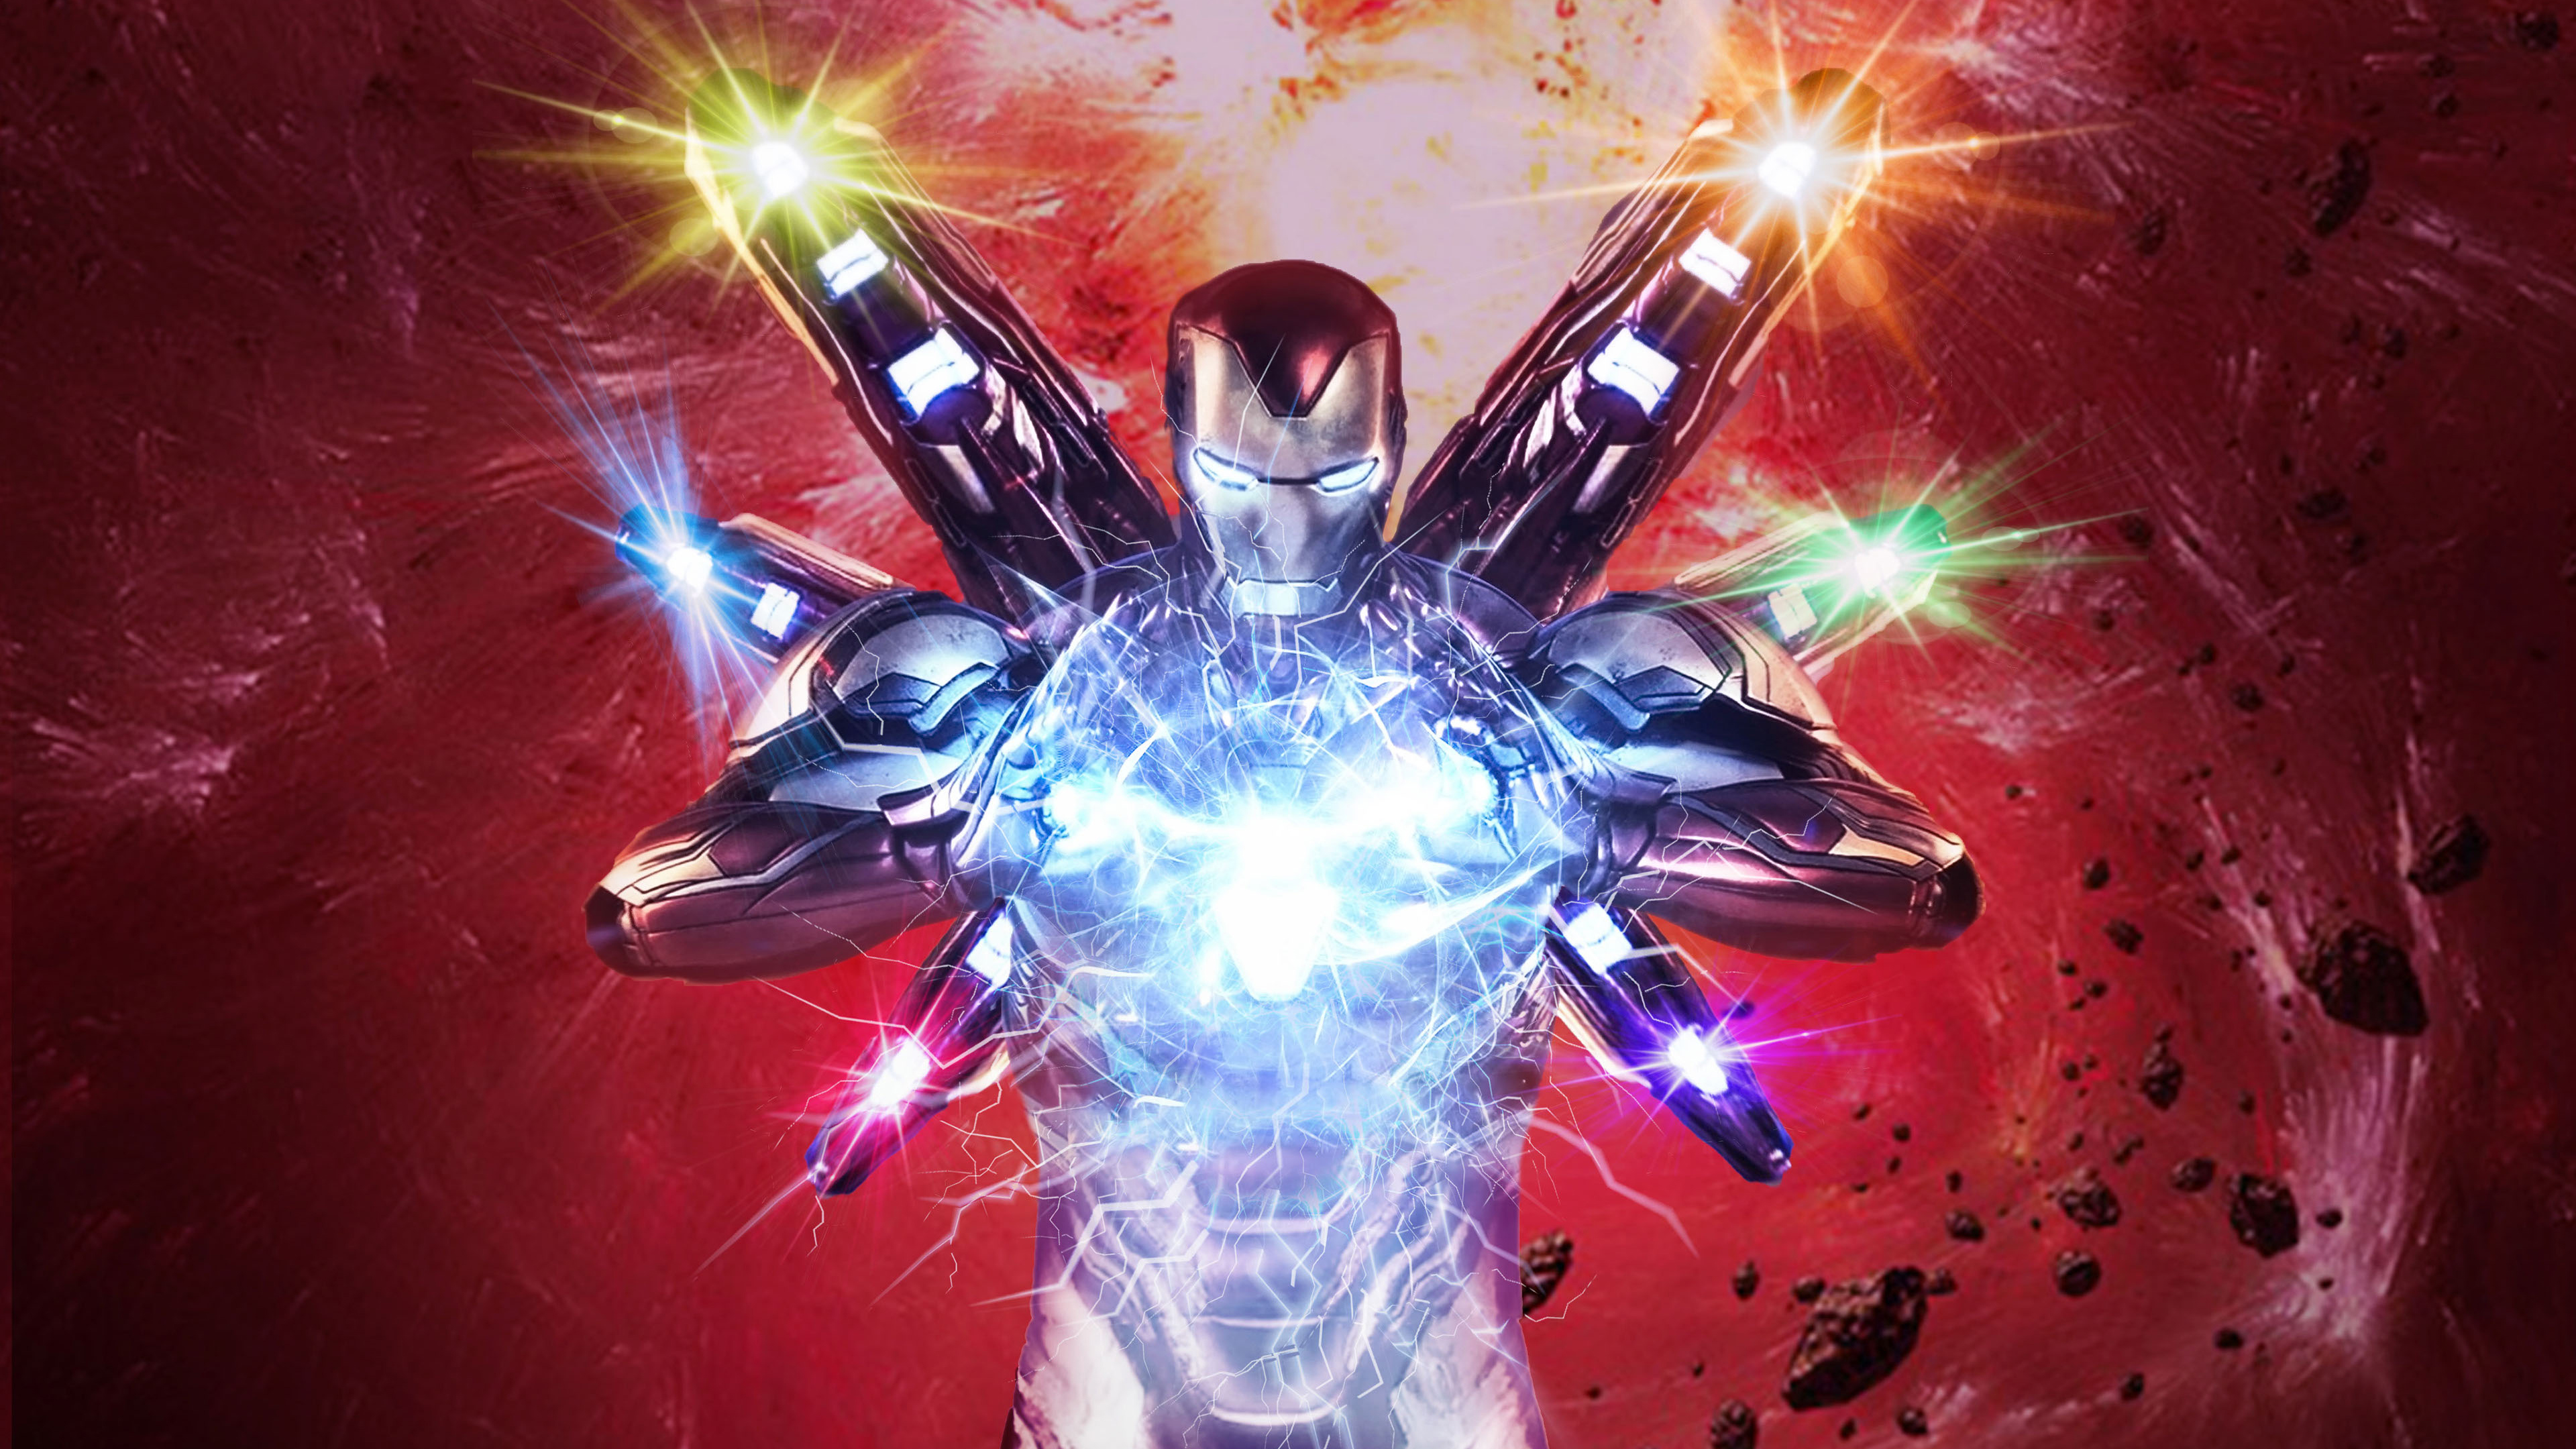 Iron Man in Avengers Endgame 4K Wallpapers